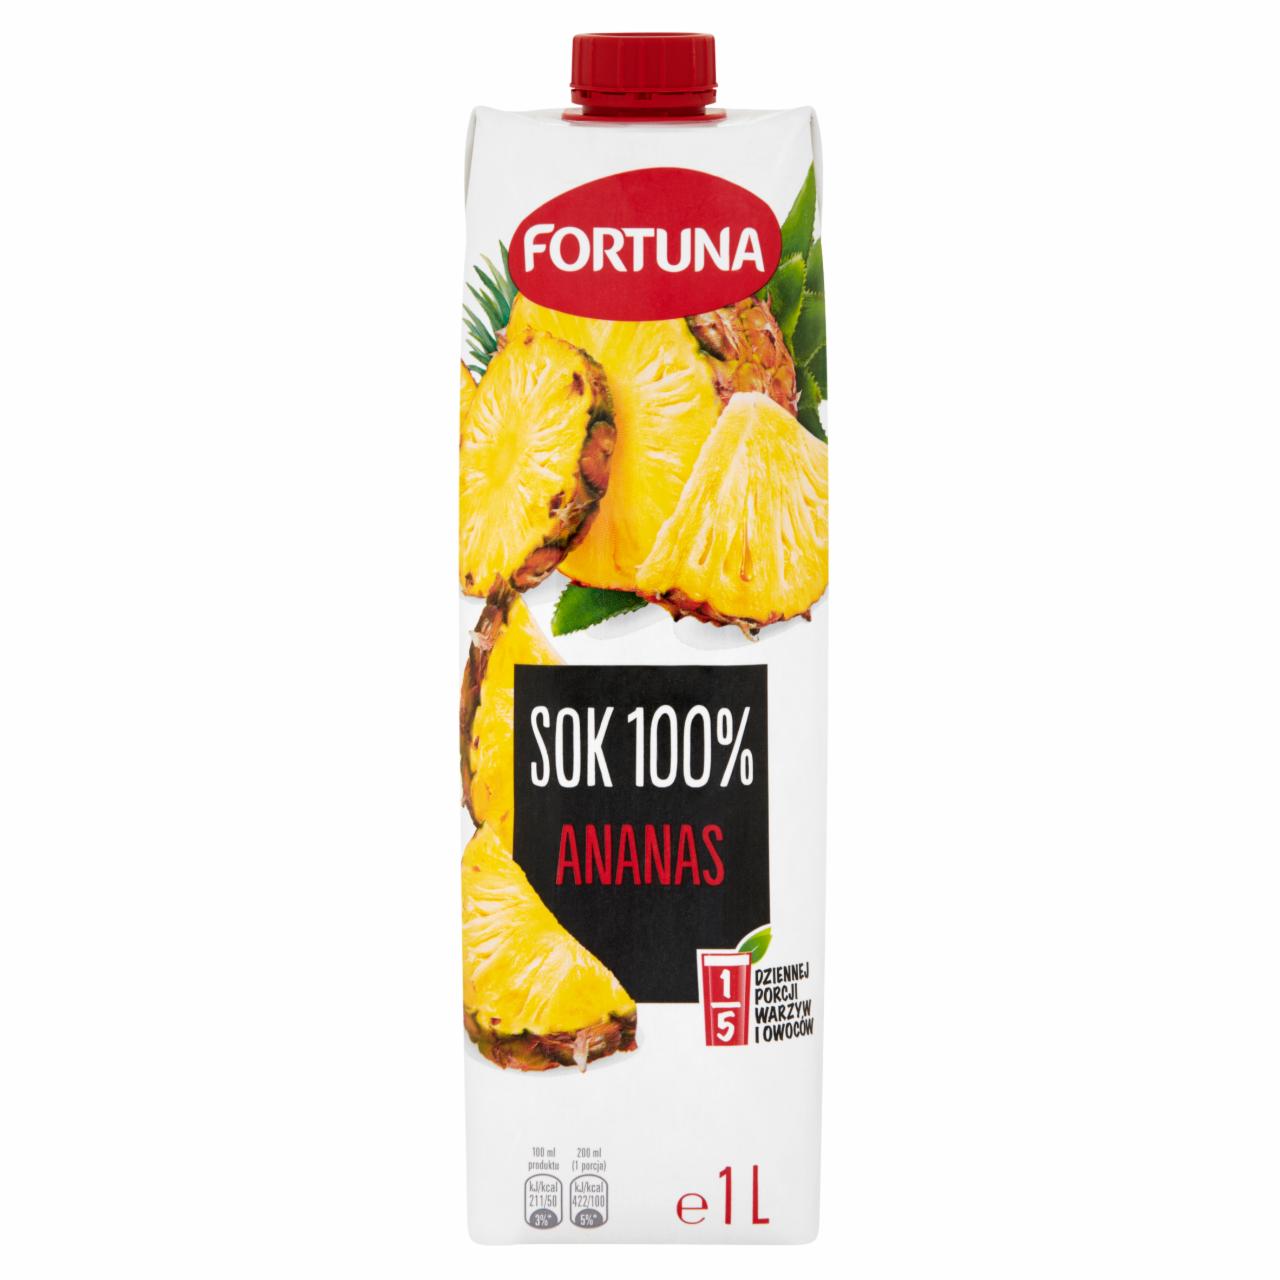 Zdjęcia - Fortuna Sok 100% ananas 1 l